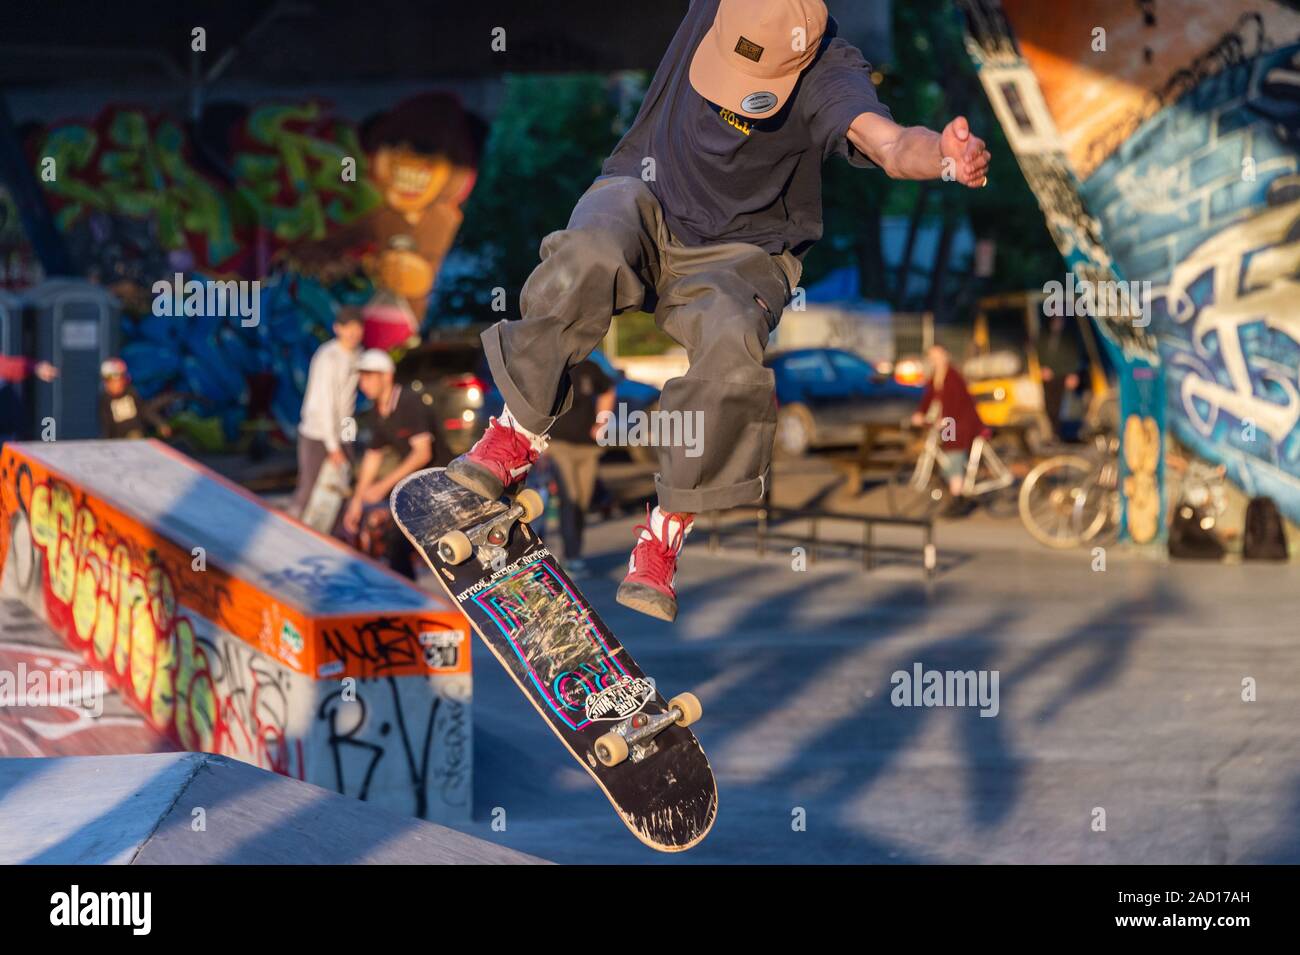 Skateur Banque D Image Et Photos Alamy